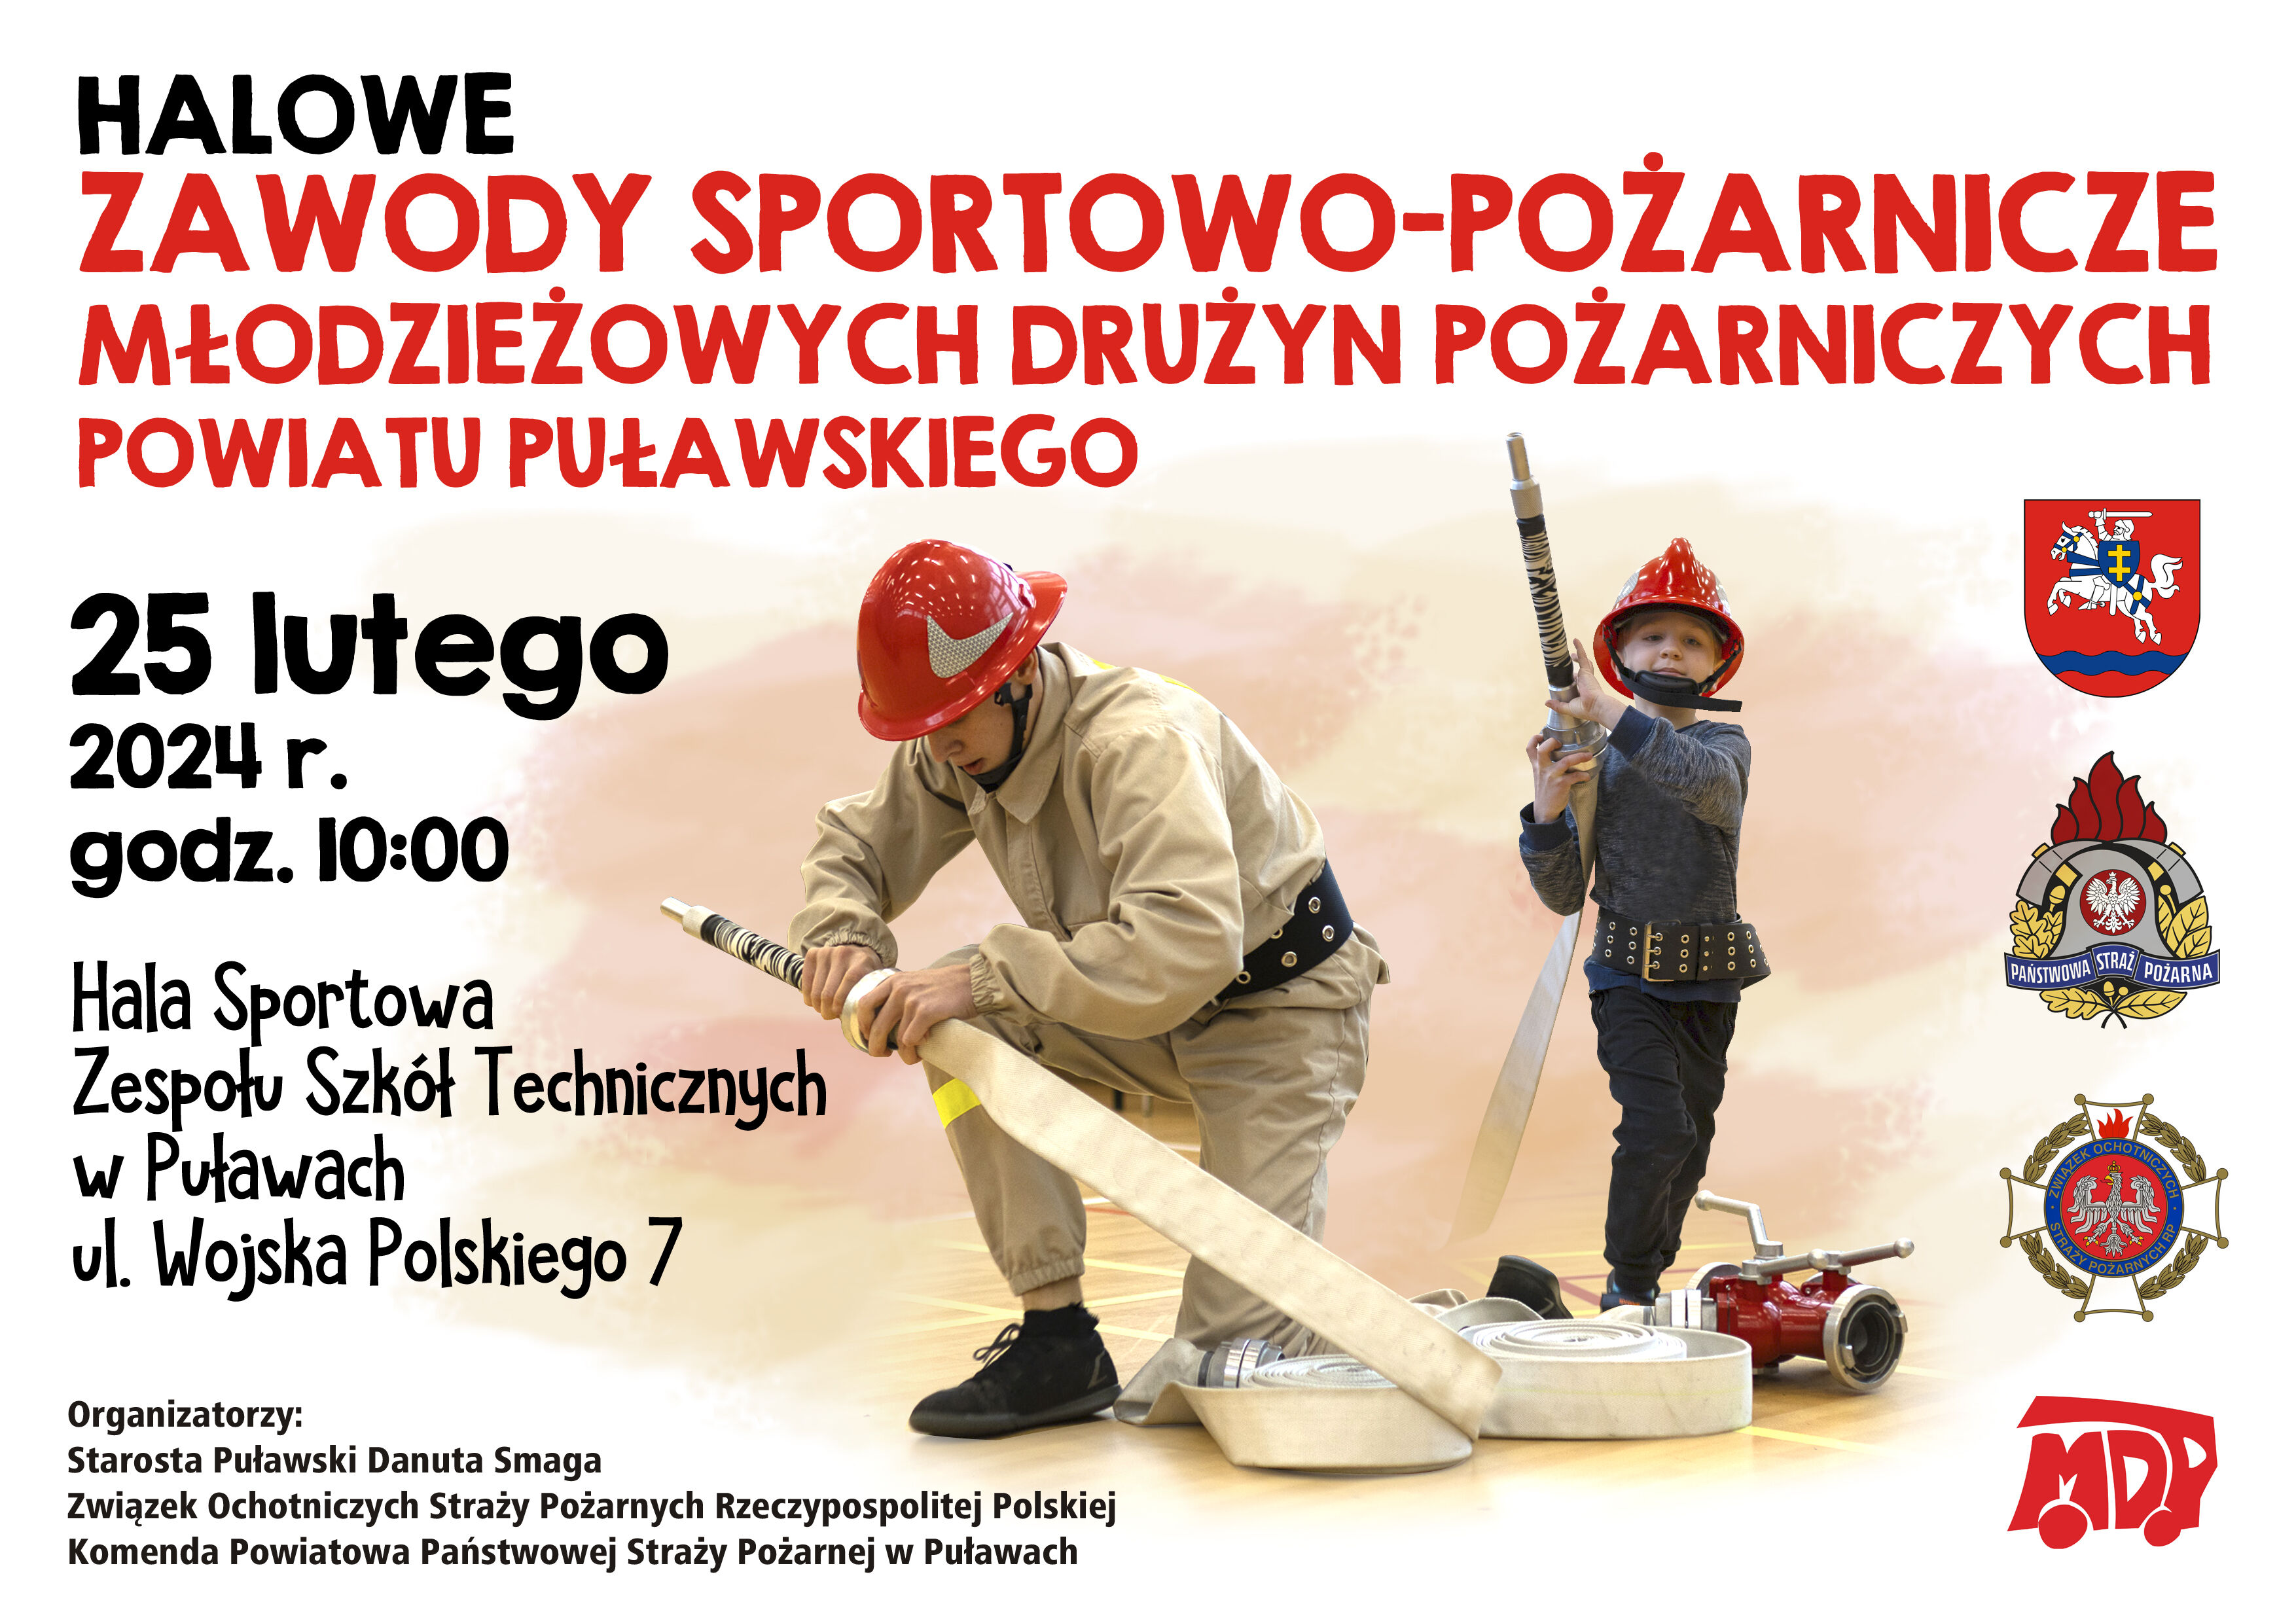 Już w najbliższą niedzielę (25 lutego) o godz. 10:00 w hali sportowej Zespołu Szkół Technicznych w Puławach odbędą się Halowe Zawody Sportowo-Pożarnicze Młodzieżowych Drużyn Pożarniczych Powiatu Puławskiego